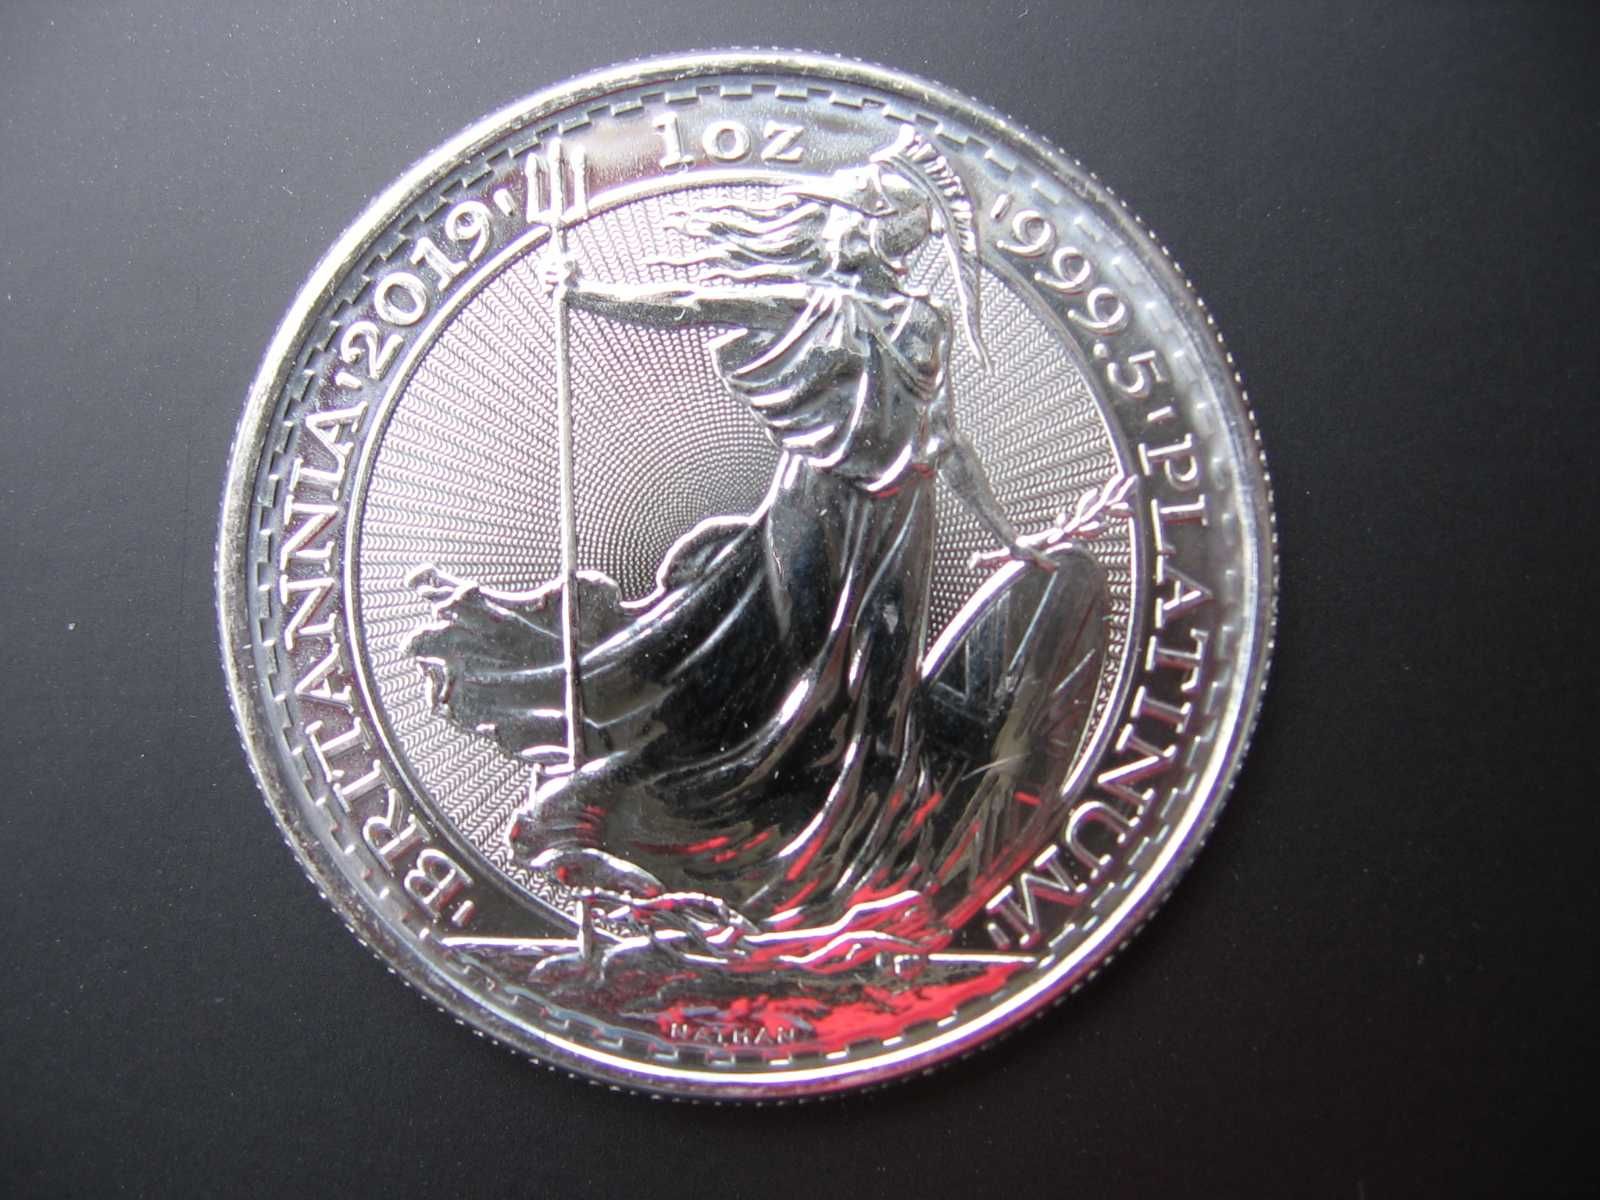 Монета 100 Фунтов "Британия"-Платина 31.1грамм(999проба)отл.инвестиция